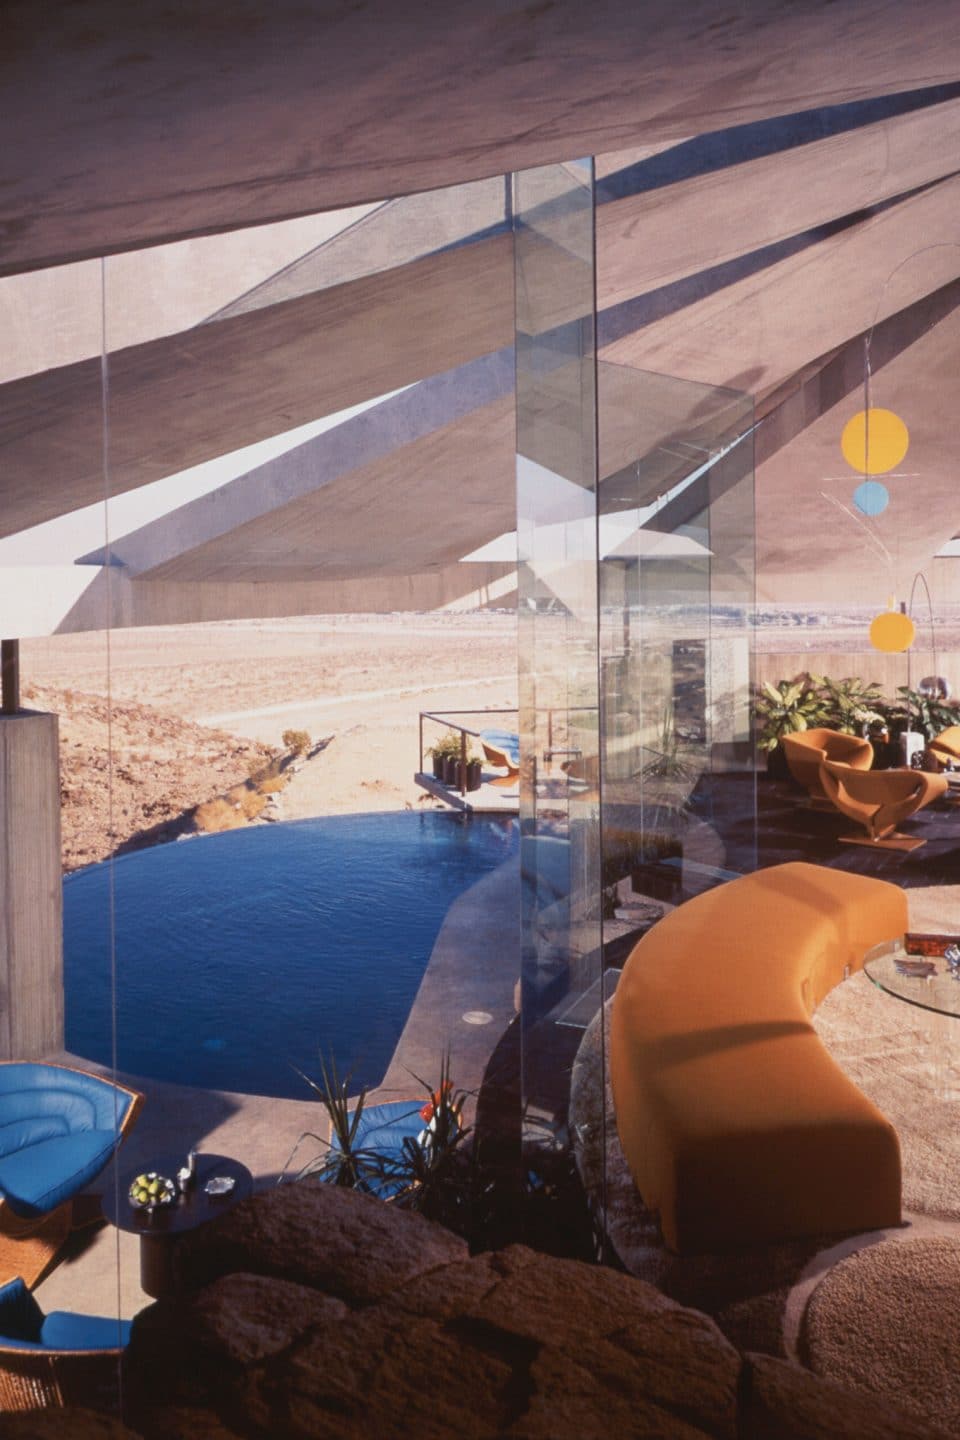 Desert Modern Designer Arthur Elrod Finally Gets His Day in the Sun